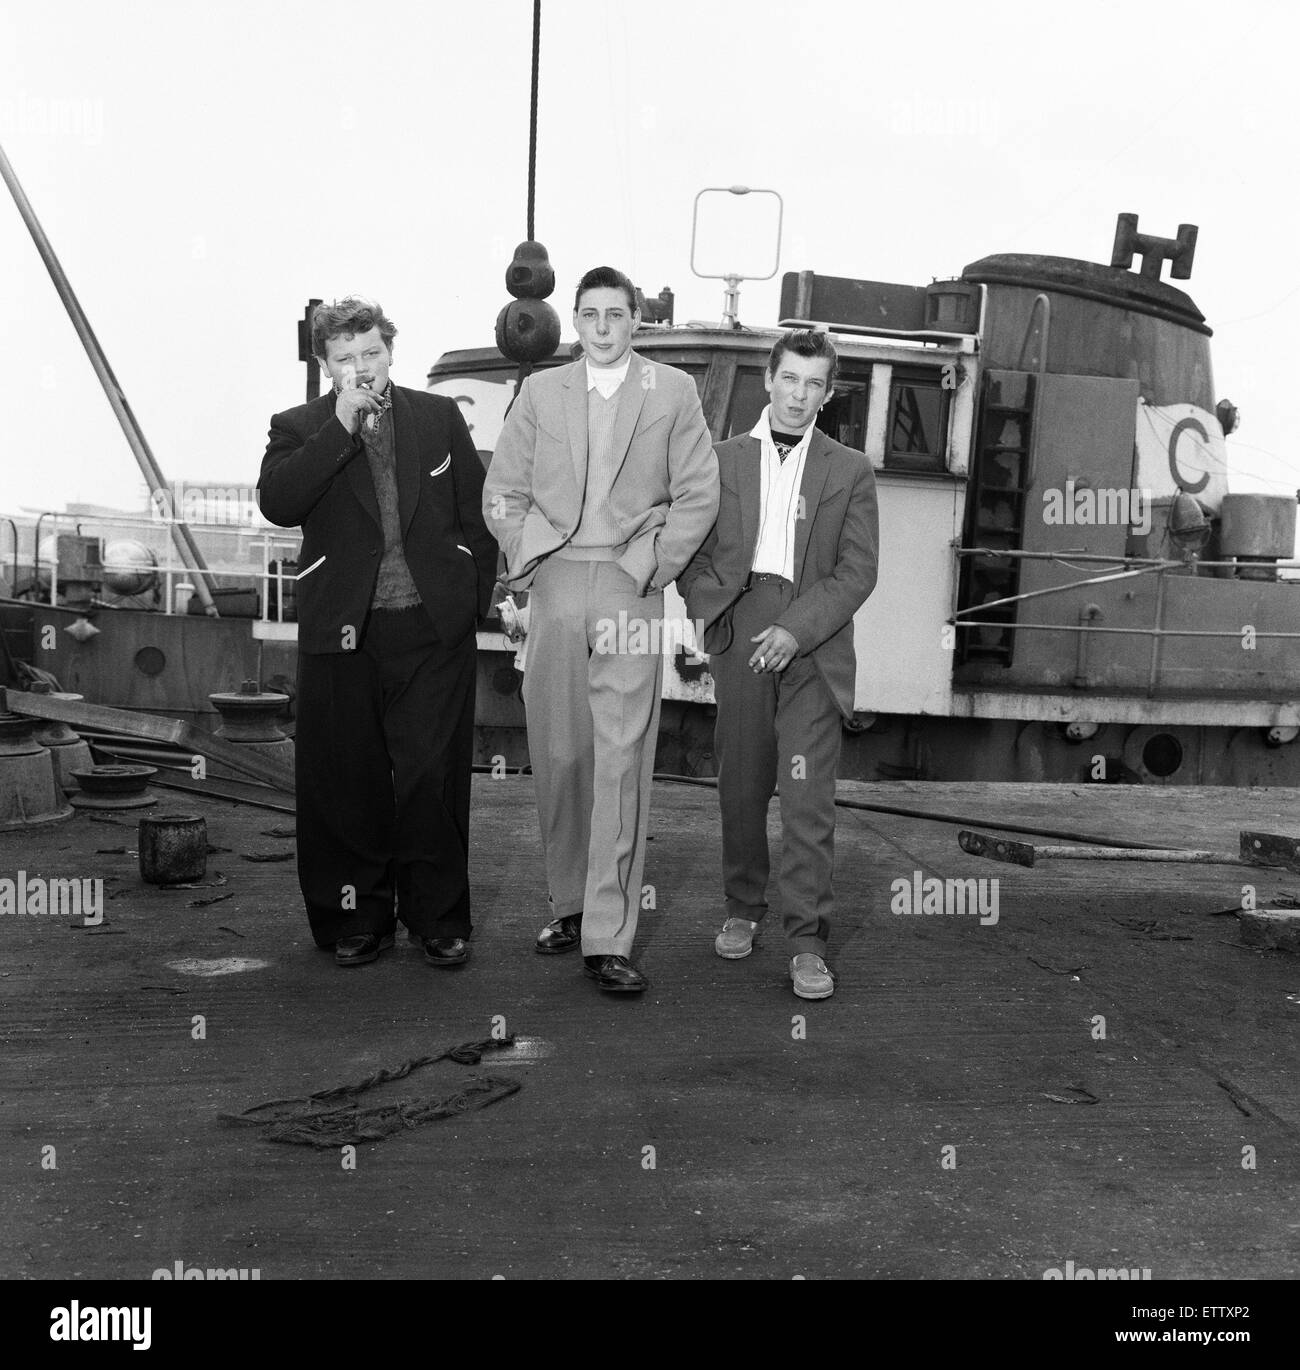 David Goldspink, 17, Ray Winney, 16, und Johnny Ball, 16, auf dem Trawler "Krebse" nach dem Wechsel in ihren Anzügen. "Dockside Dandys" bei Lowestoft, Suffolk. 16. Mai 1962. Stockfoto